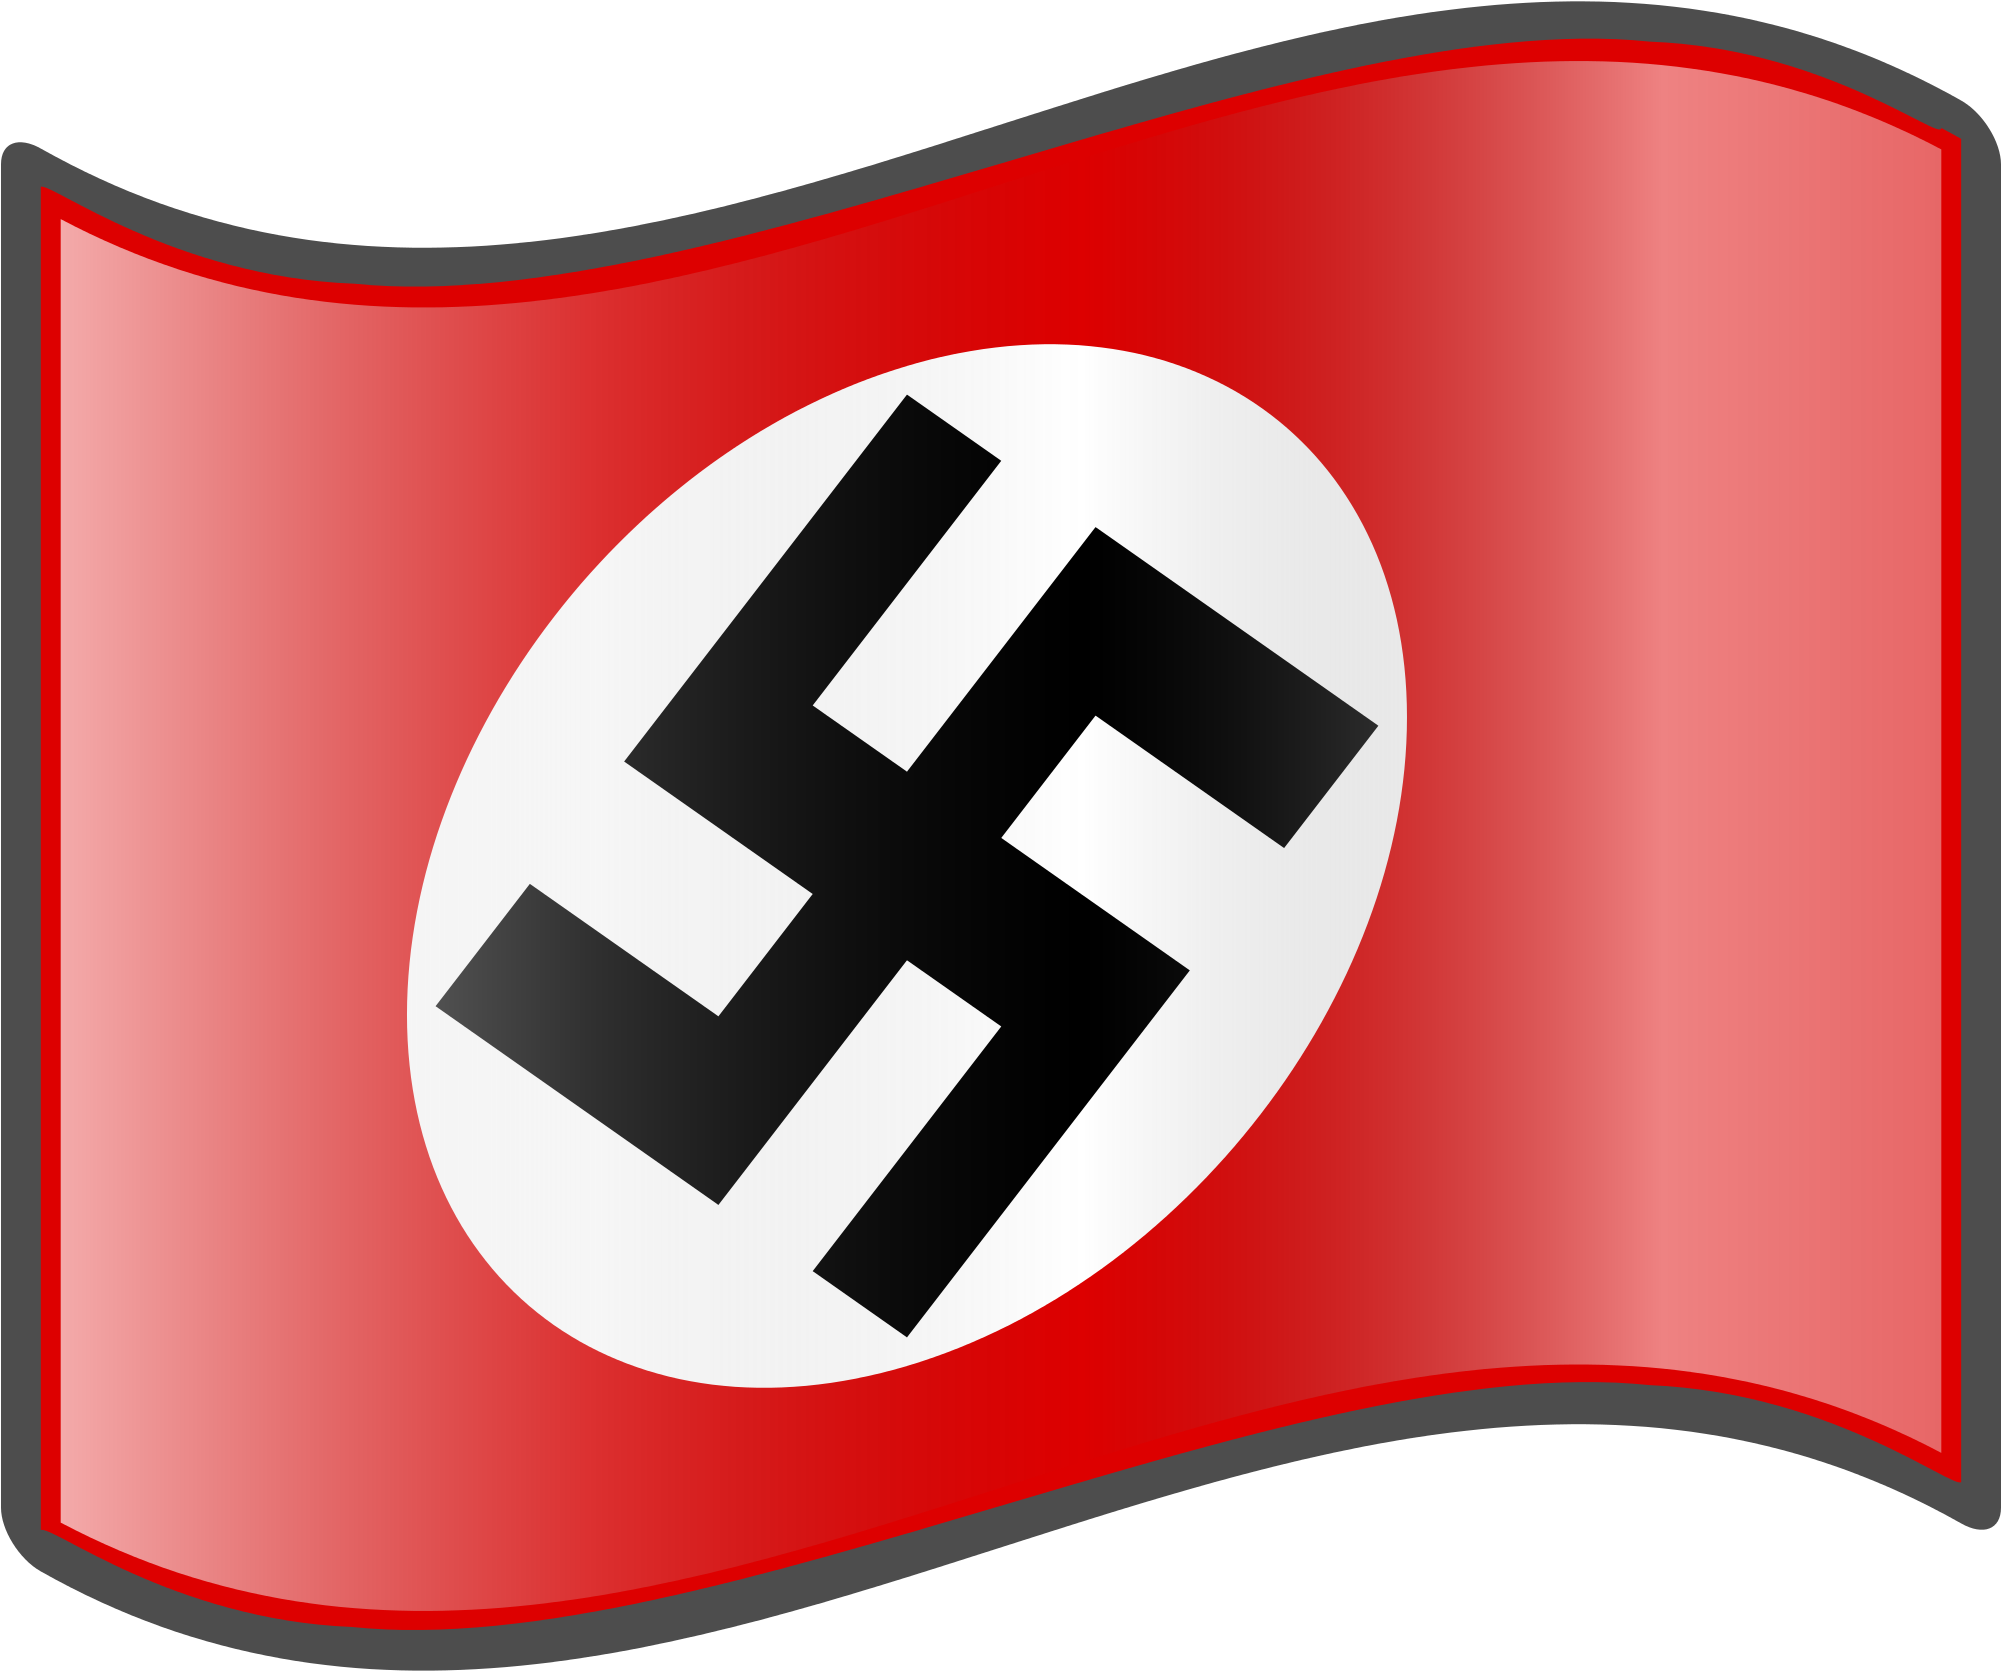 Open - Hindu Swastika Vs Nazi Swastika (2000x2000)